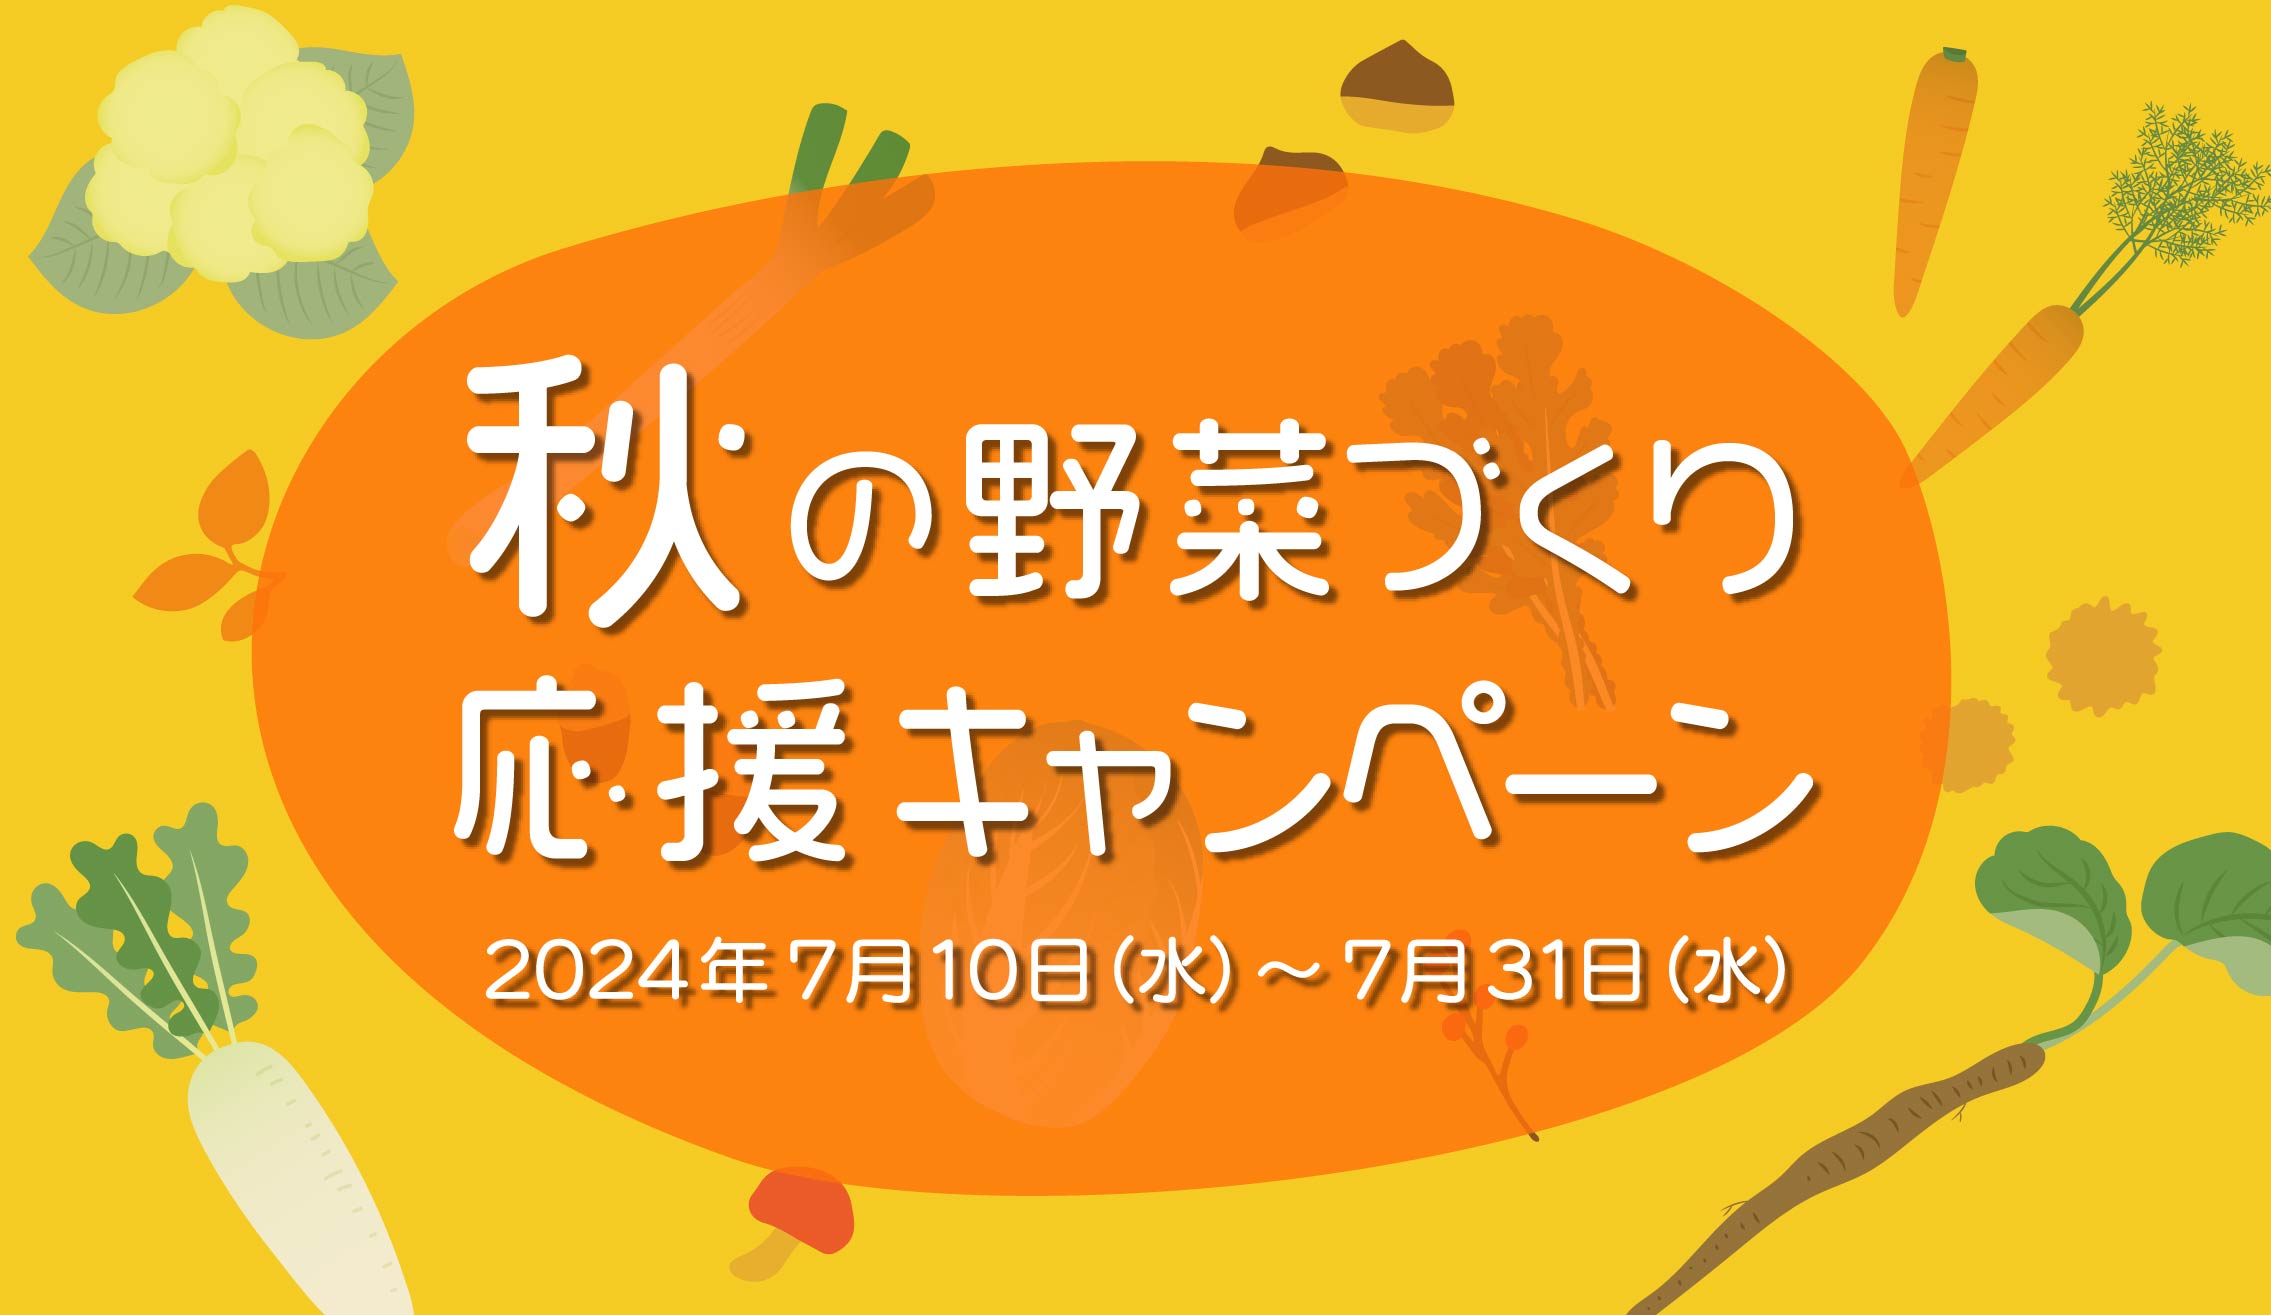 【クーポン配布中】秋の野菜づくり応援キャンペーンのお知らせの写真